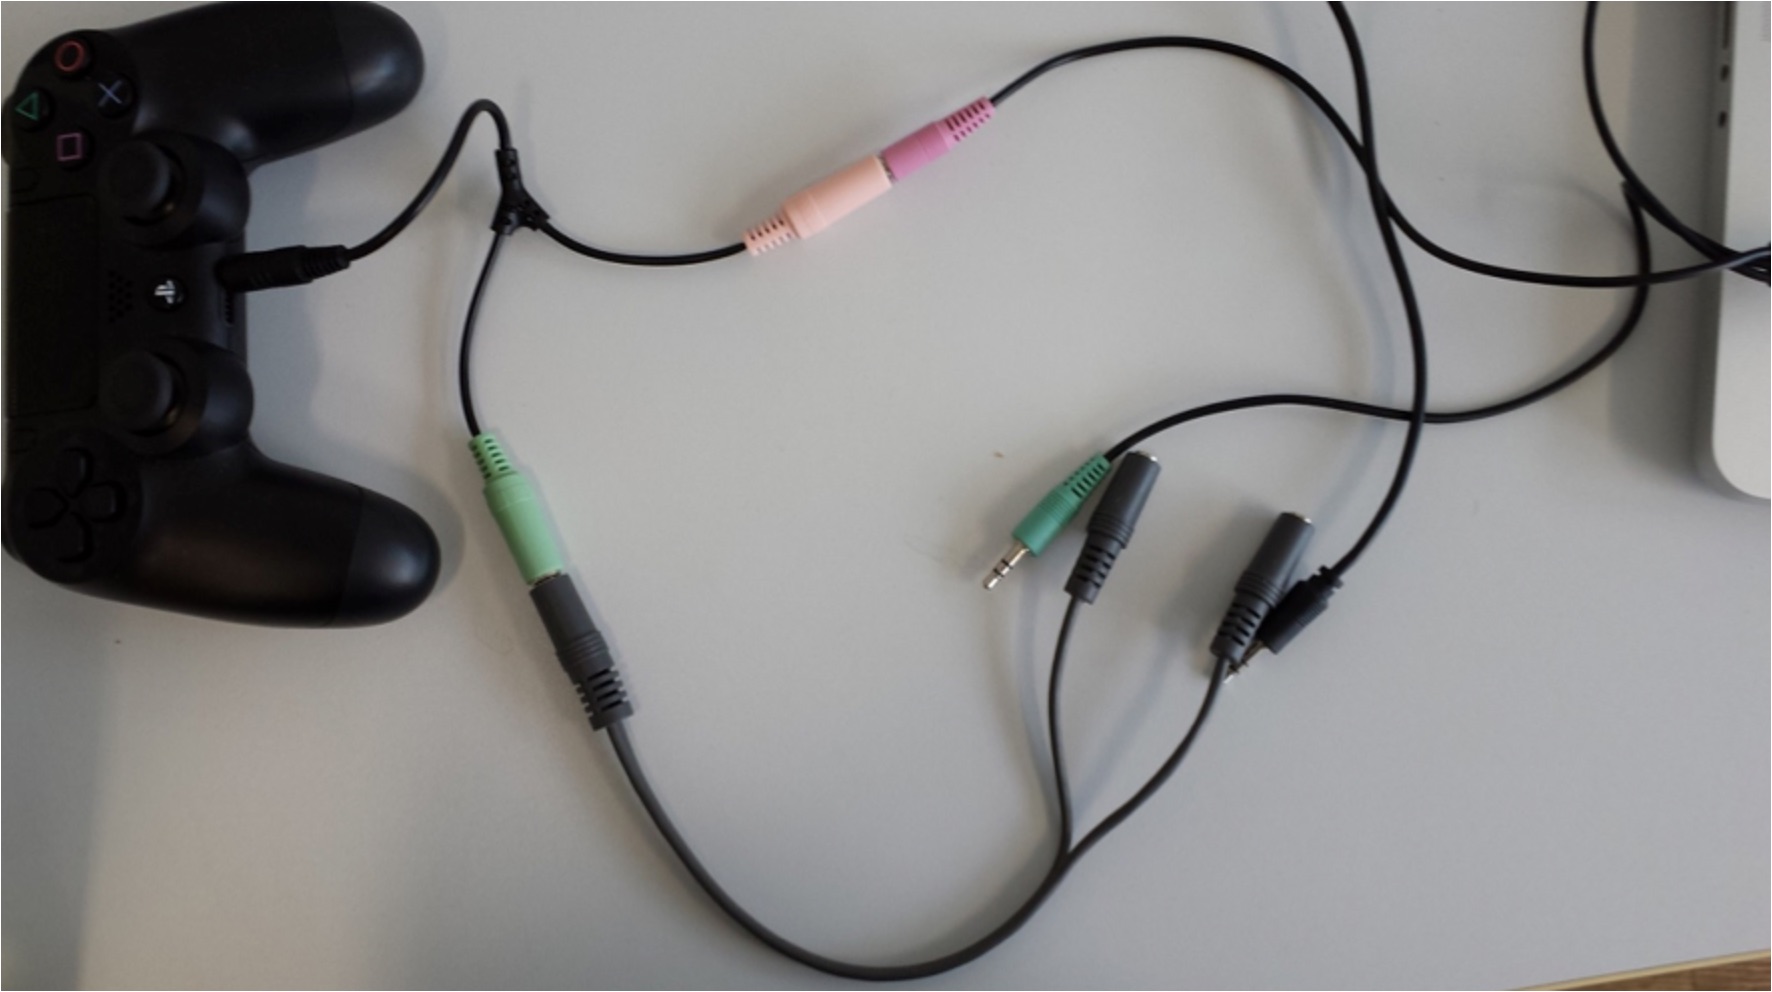 PS4 Audio Recording: Capturing Headset Audio With Elgato